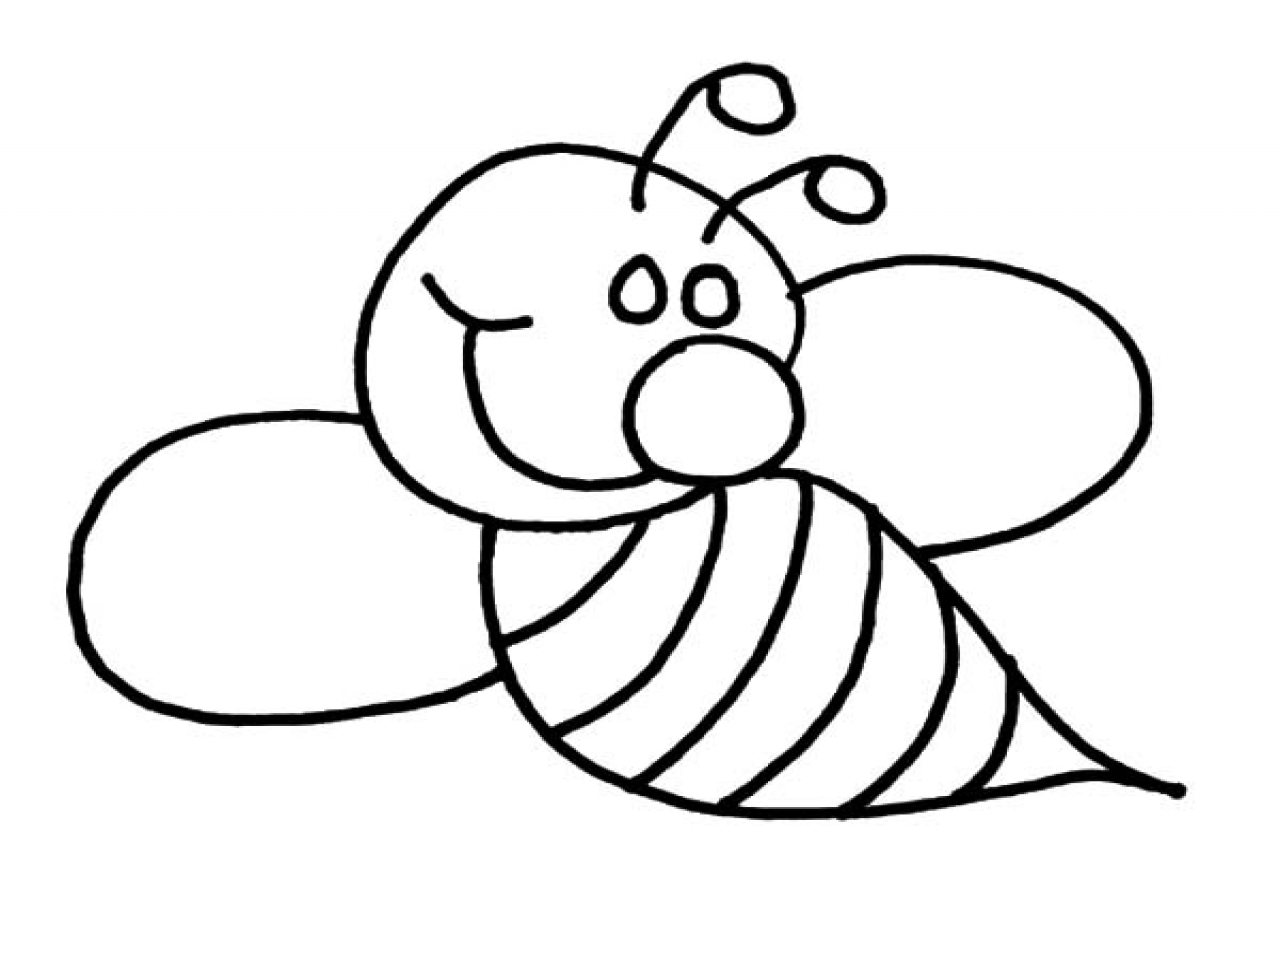 Раскраска насекомое ребенку 4 года. Пчела раскраска. Пчела раскраска для детей. Раскраска пчёлка для детей. Насекомые раскраска для детей пчела.